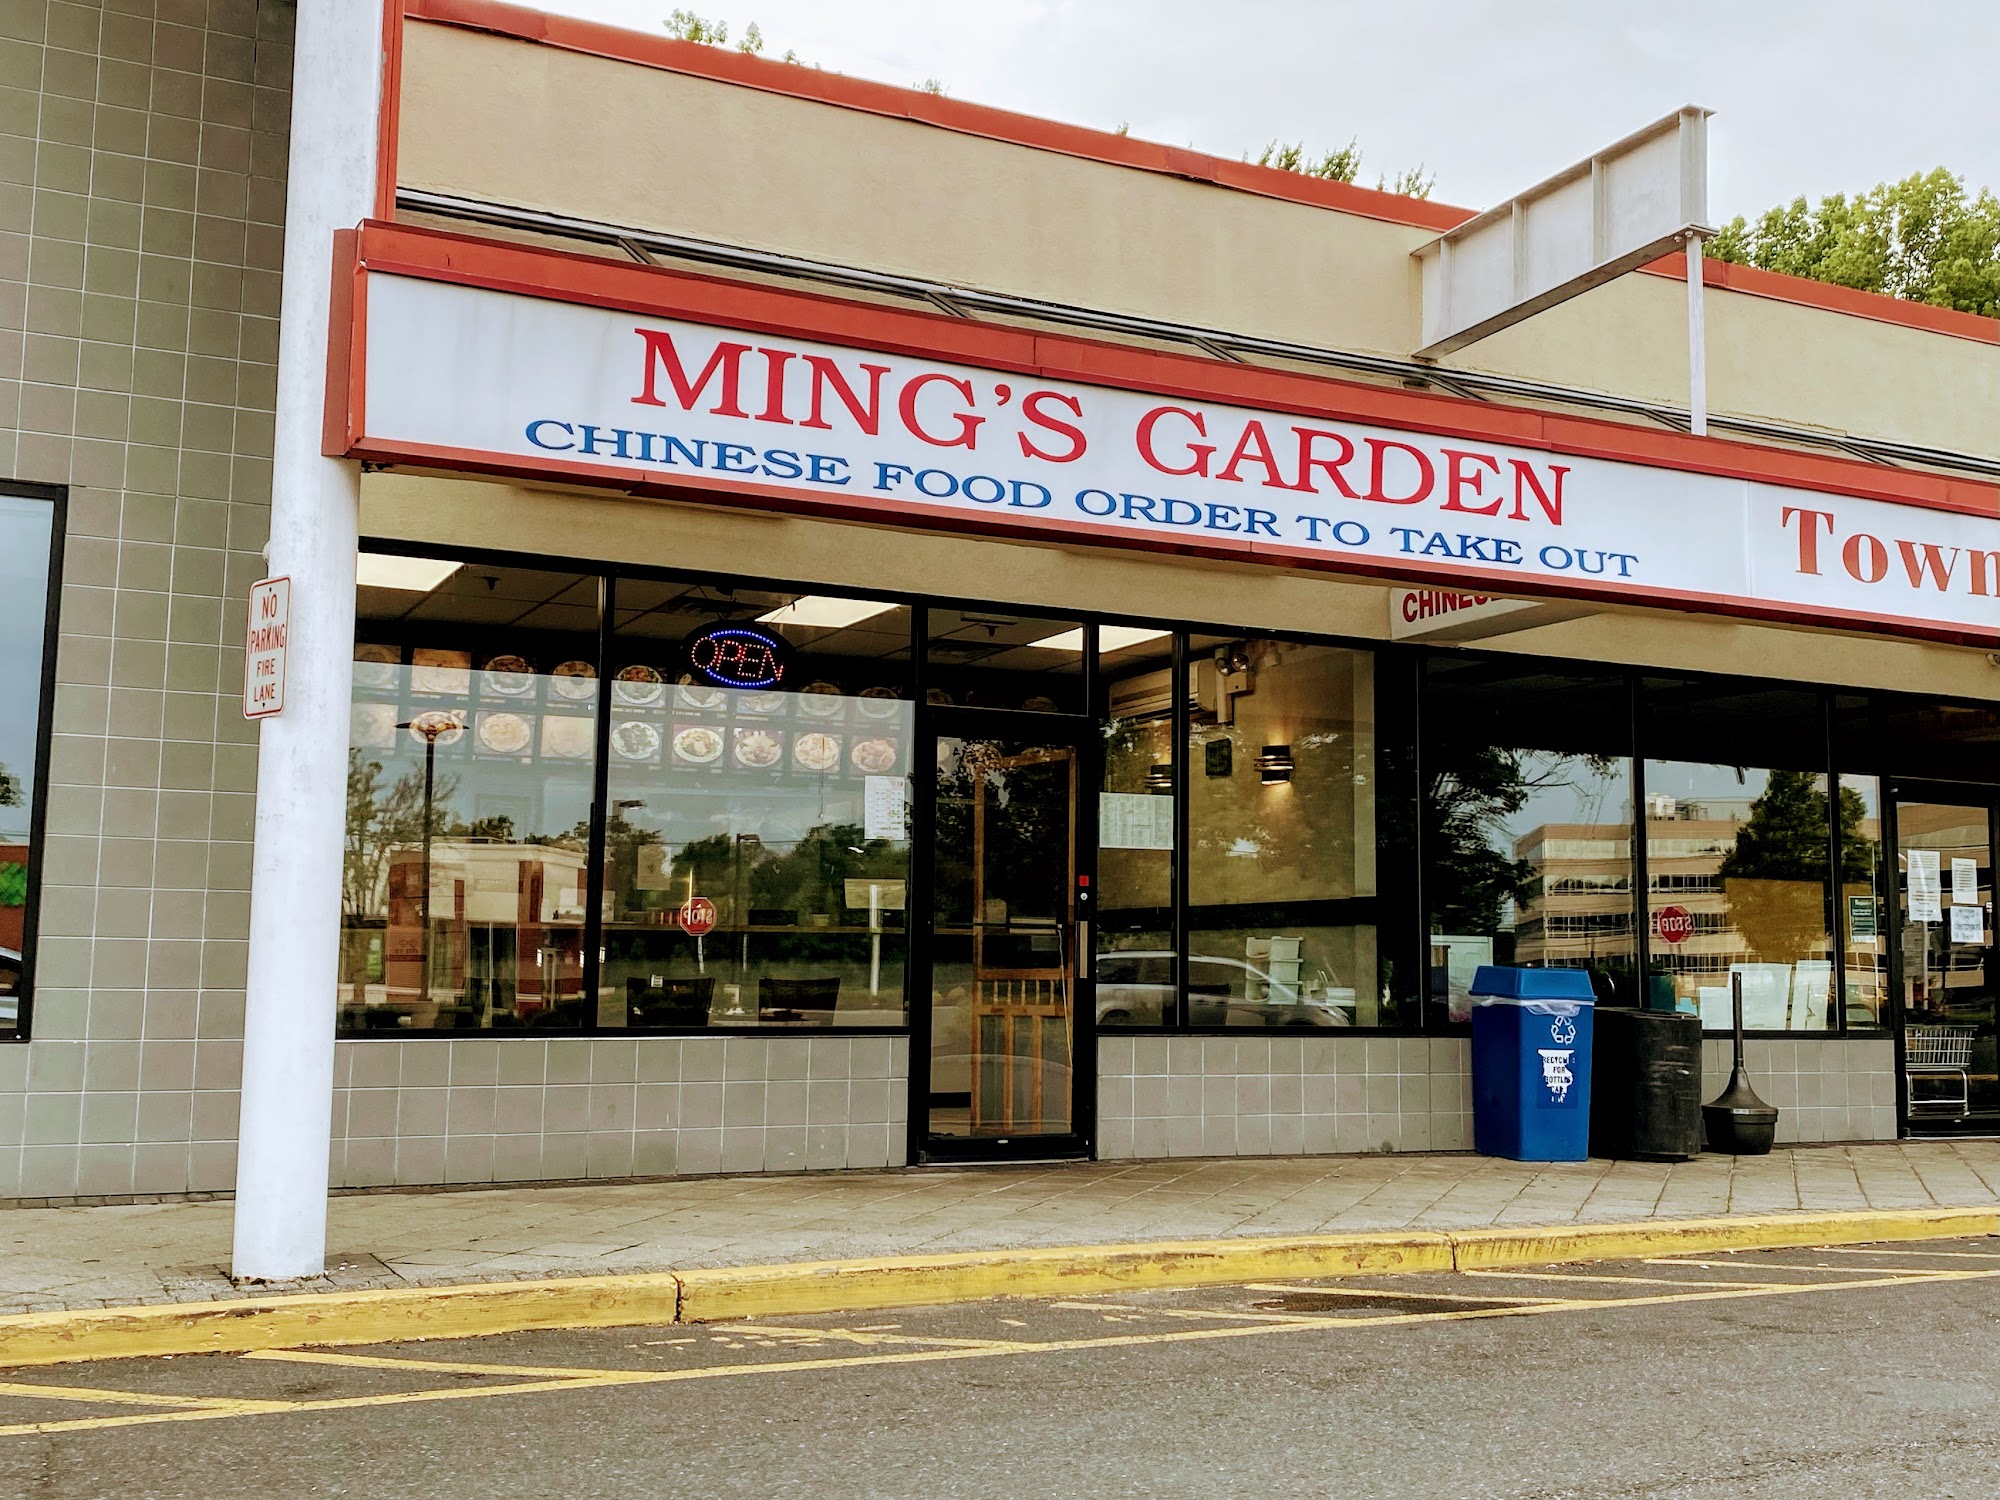 Mings Garden